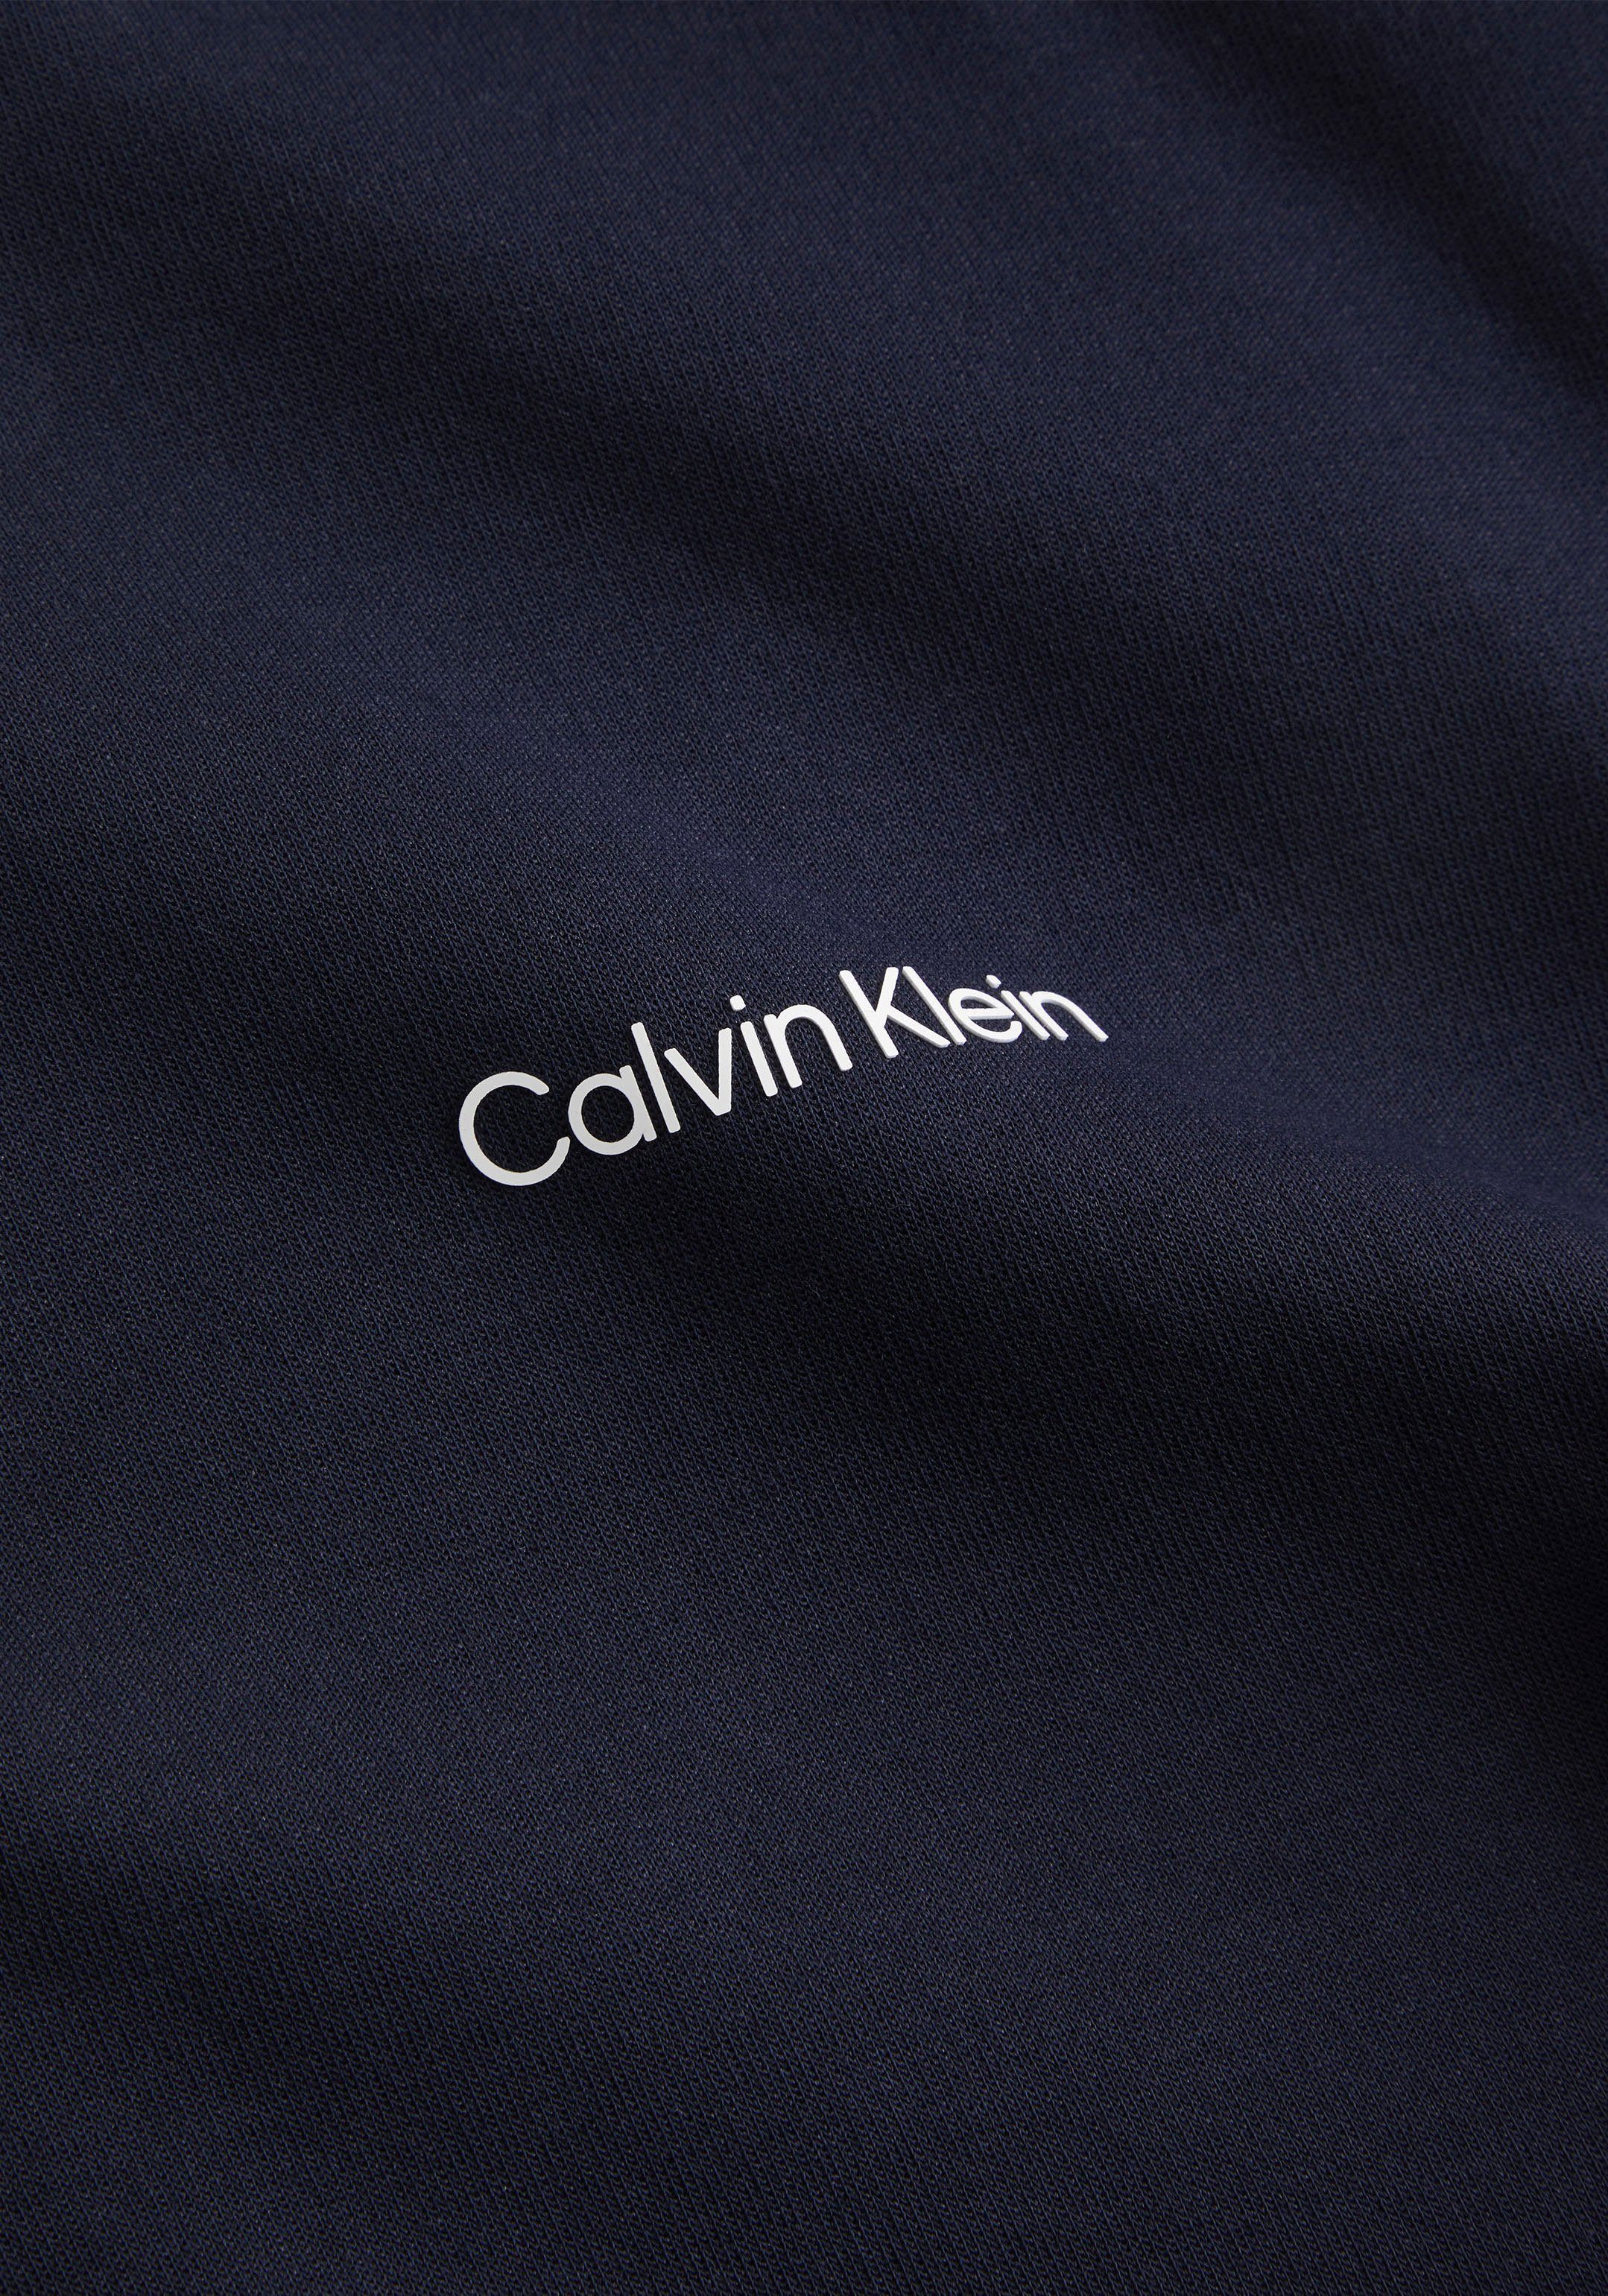 LOGO MICRO Klein halsnahmen Calvin mit REPREVE Rundhalsausschnitt marine SWEATSHIRT Sweatshirt